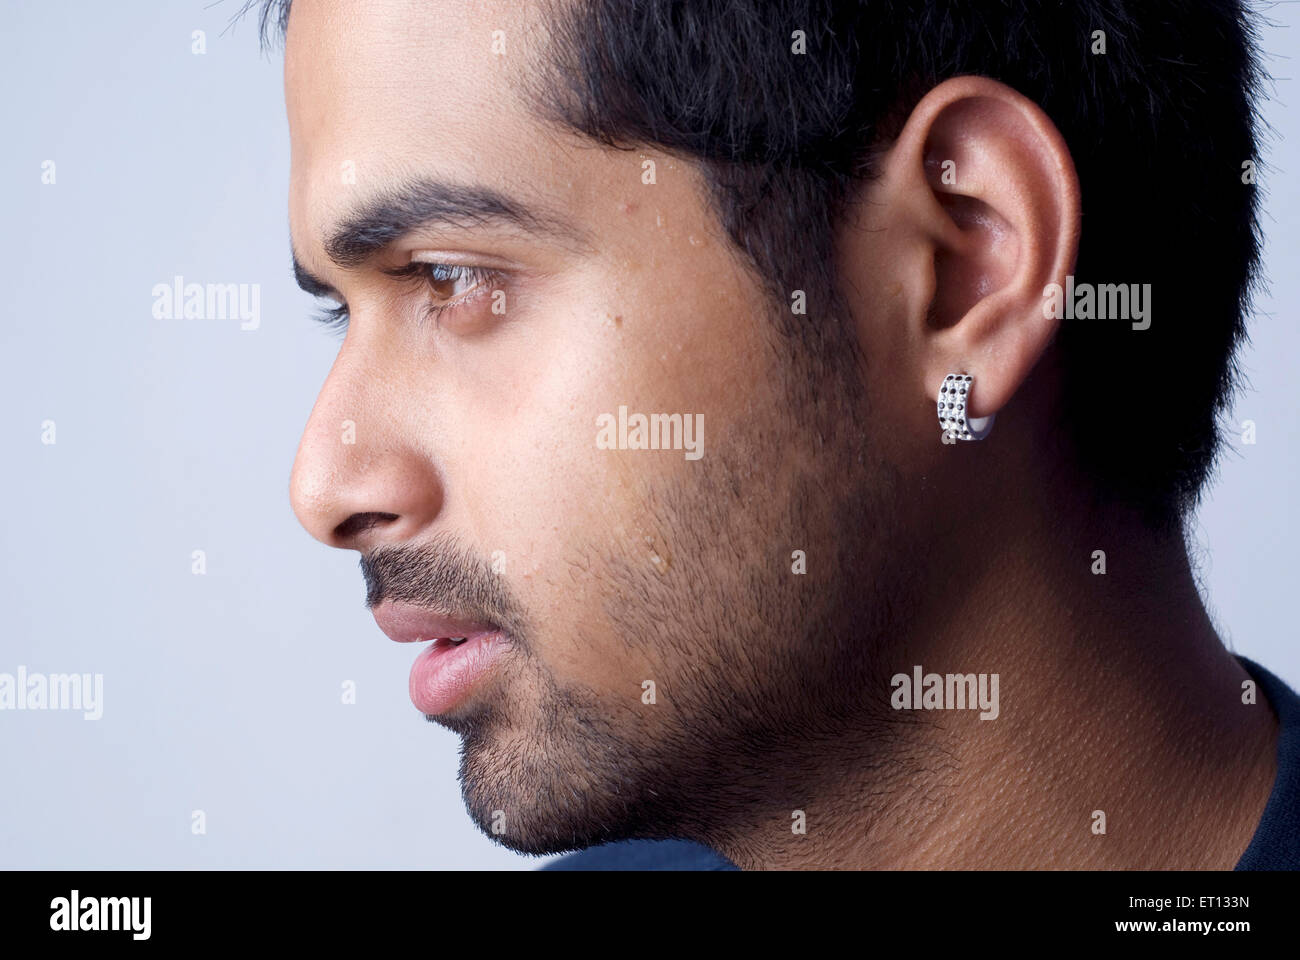 Indian man wearing earring - Model Release#733D Stock Photo